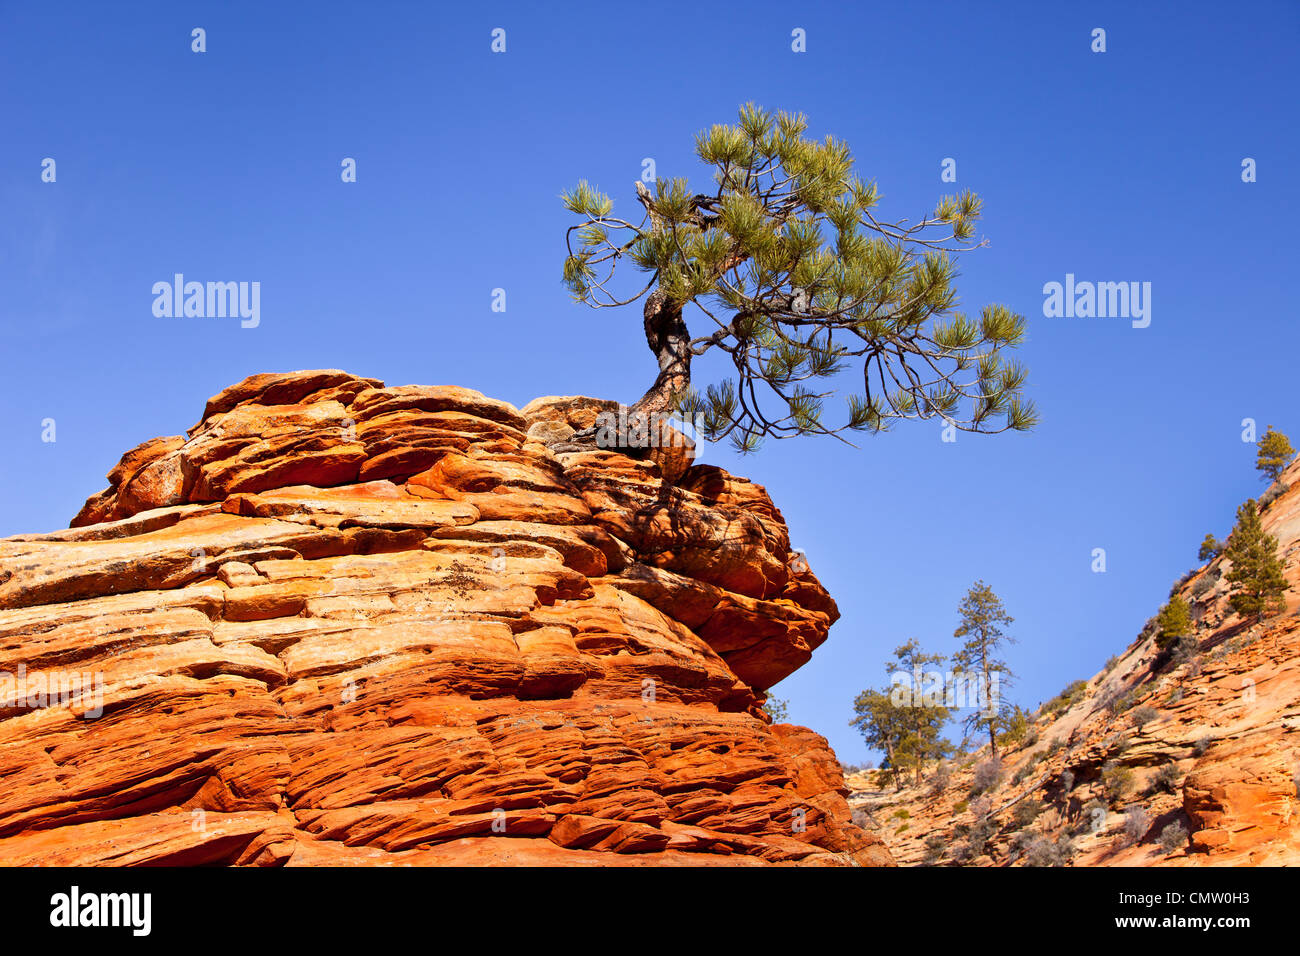 Eine sehr entschlossen Ritzel-Kiefer wächst von oben eine Sandsteinformation, Zion Nationalpark, Utah, USA Stockfoto